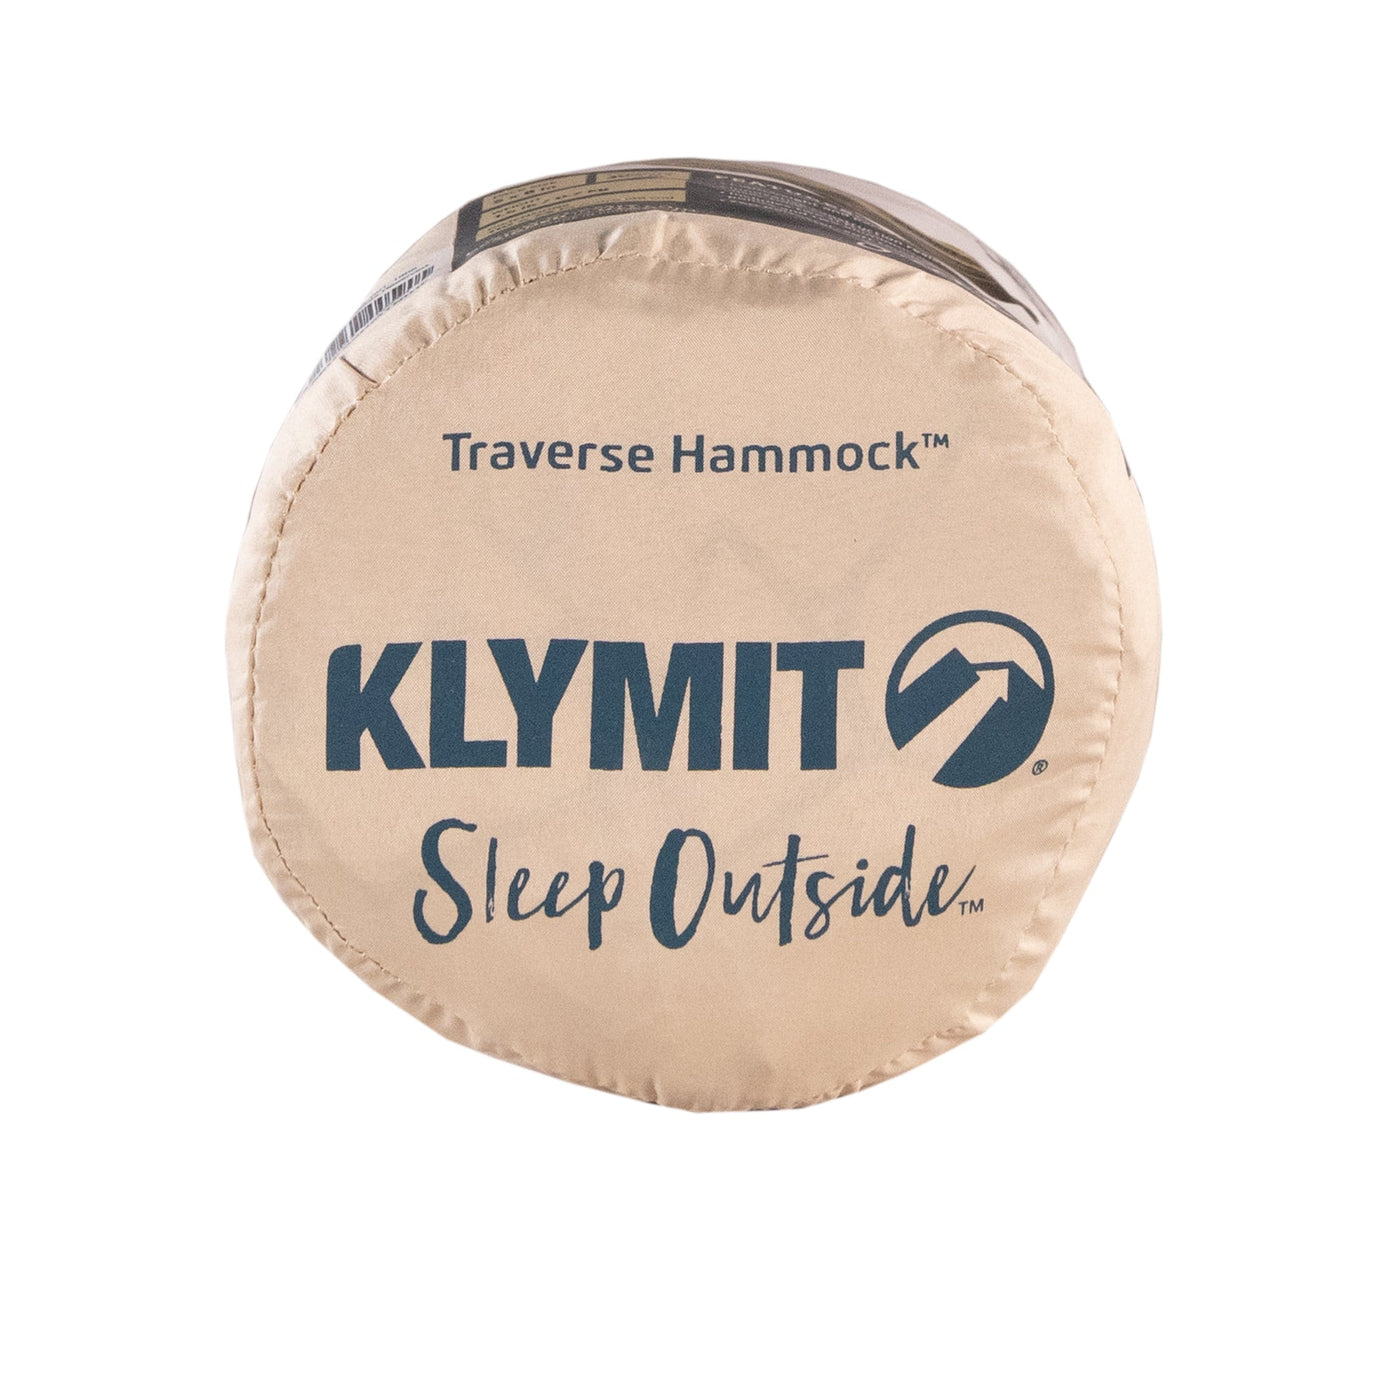 Traverse Hammock by Klymit